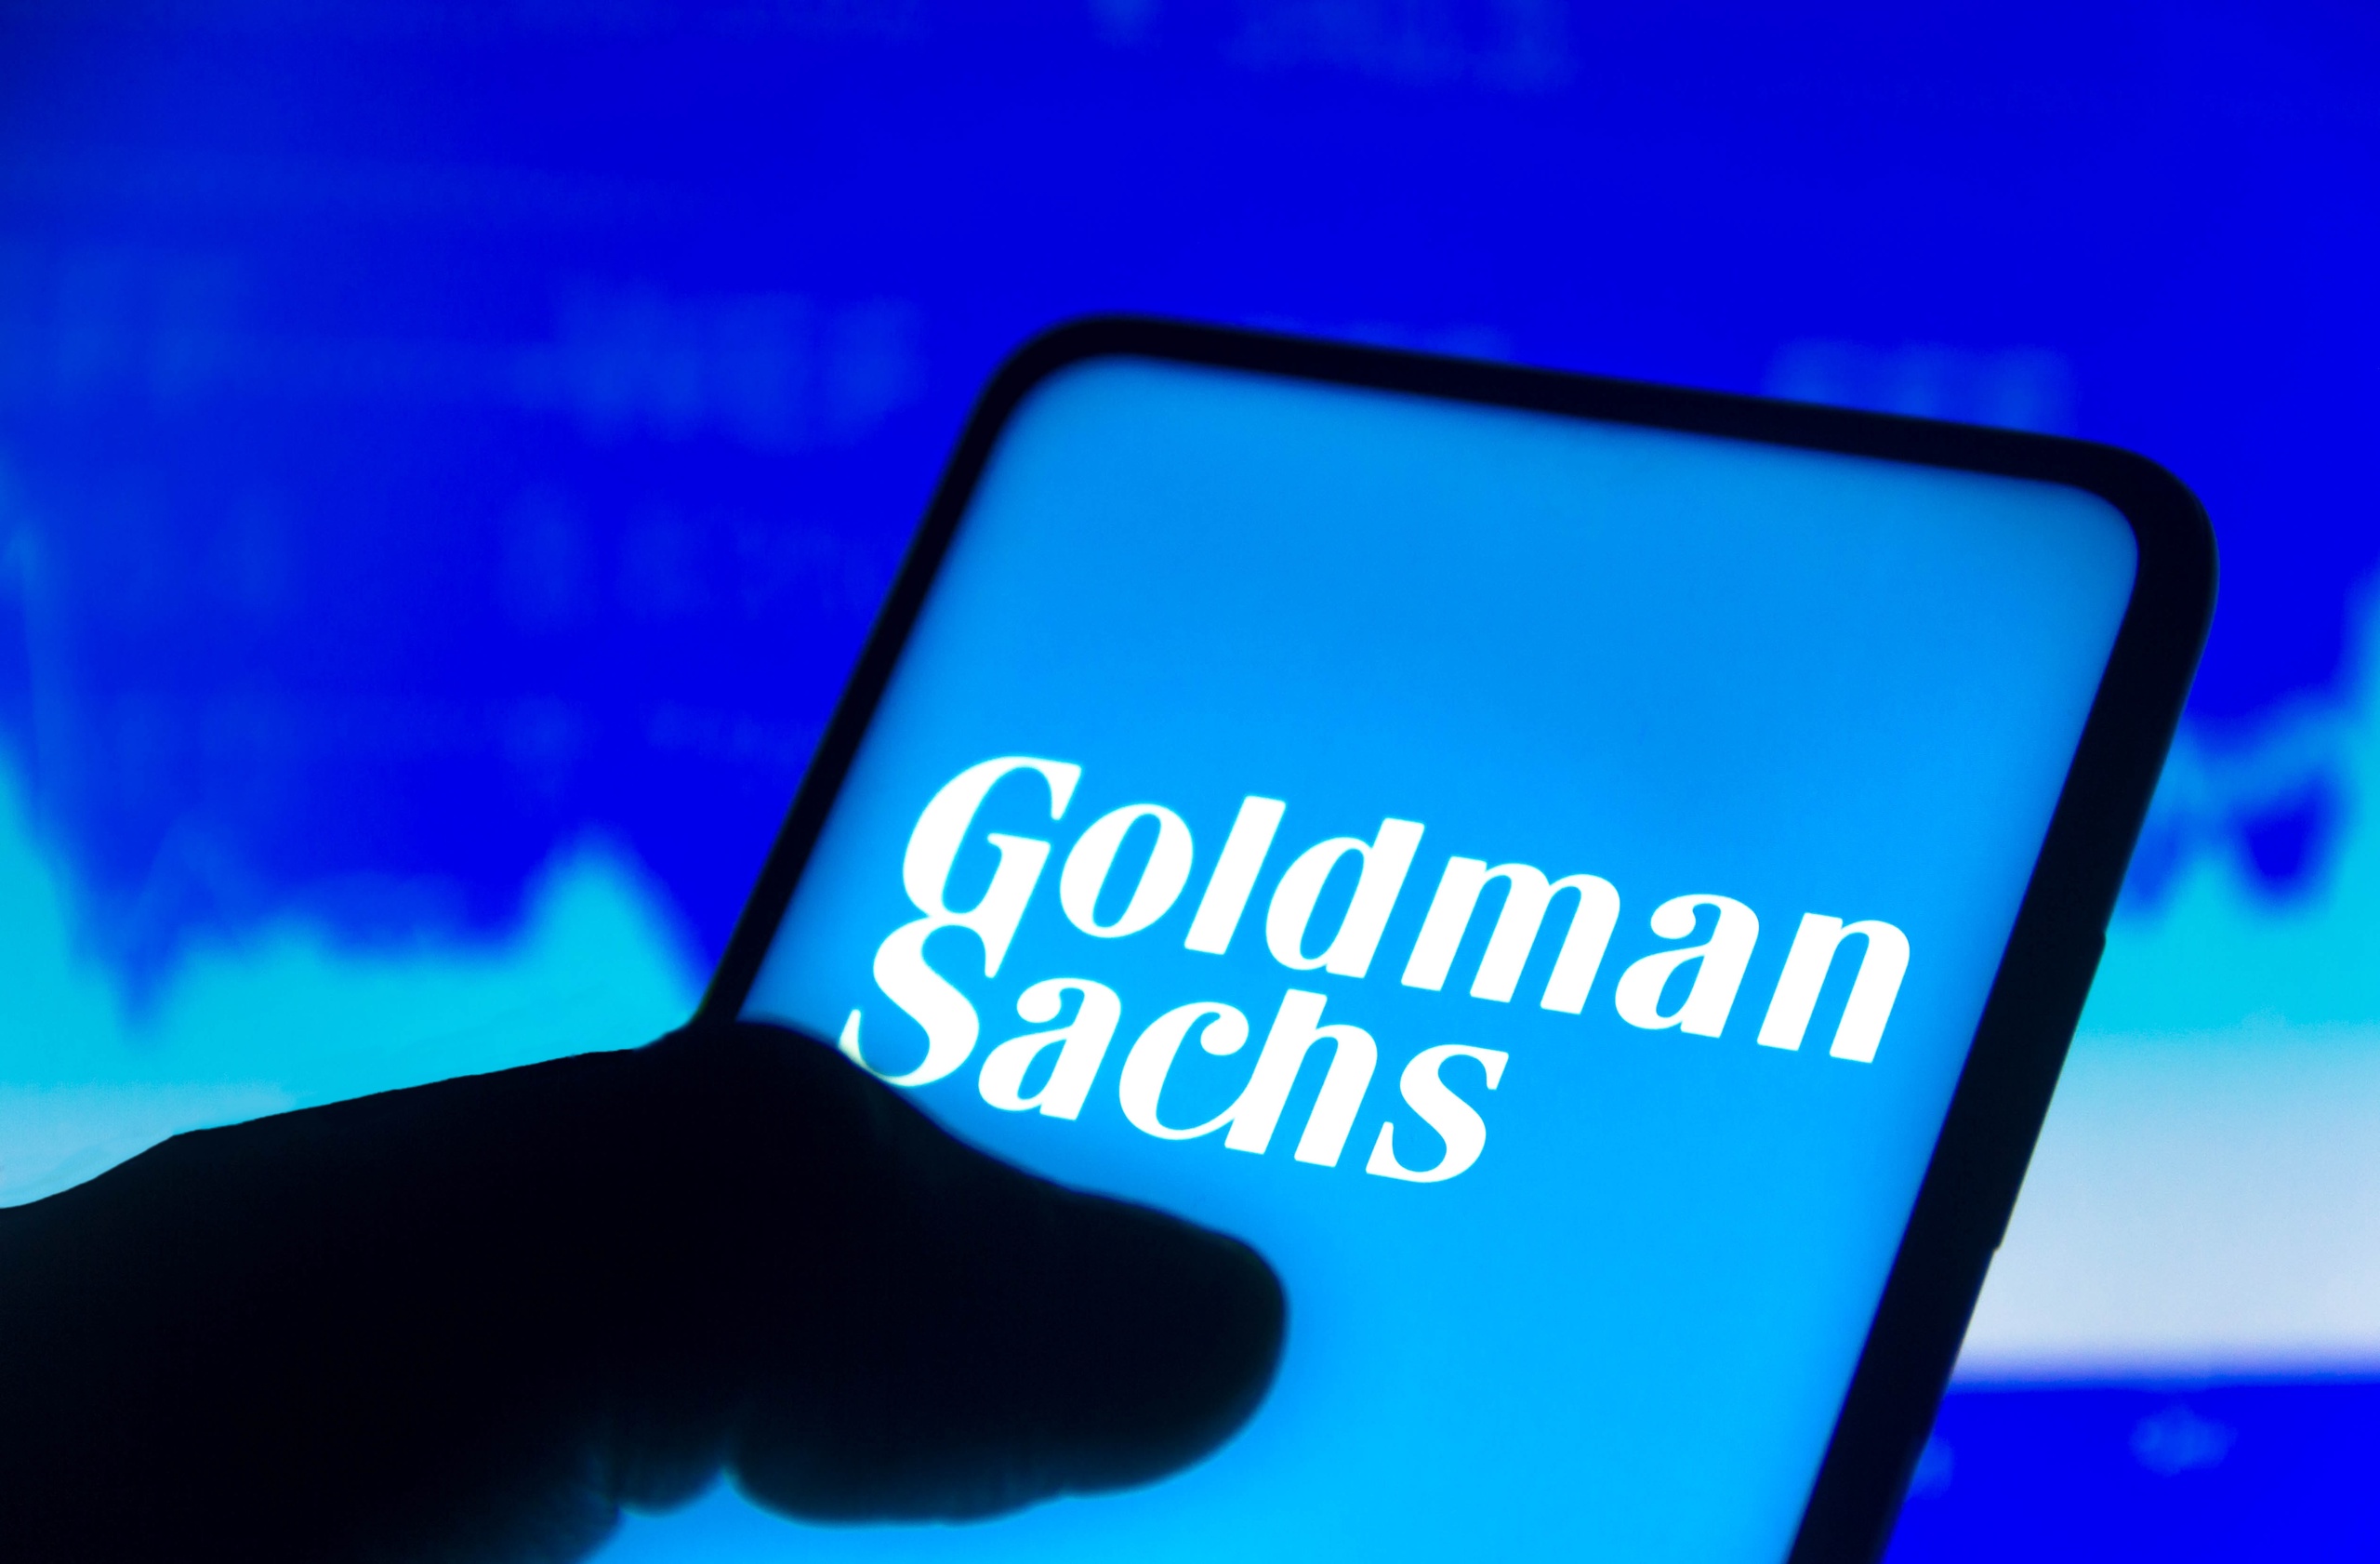 Zakenbank Goldman Sachs gaat binnen drie jaar reorganiseren. Of en hoeveel banen er op de tocht staan is nog niet bekend. De bekendmaking volgt na de tegenvallende winst in het derde kwartaal van dit jaar. 